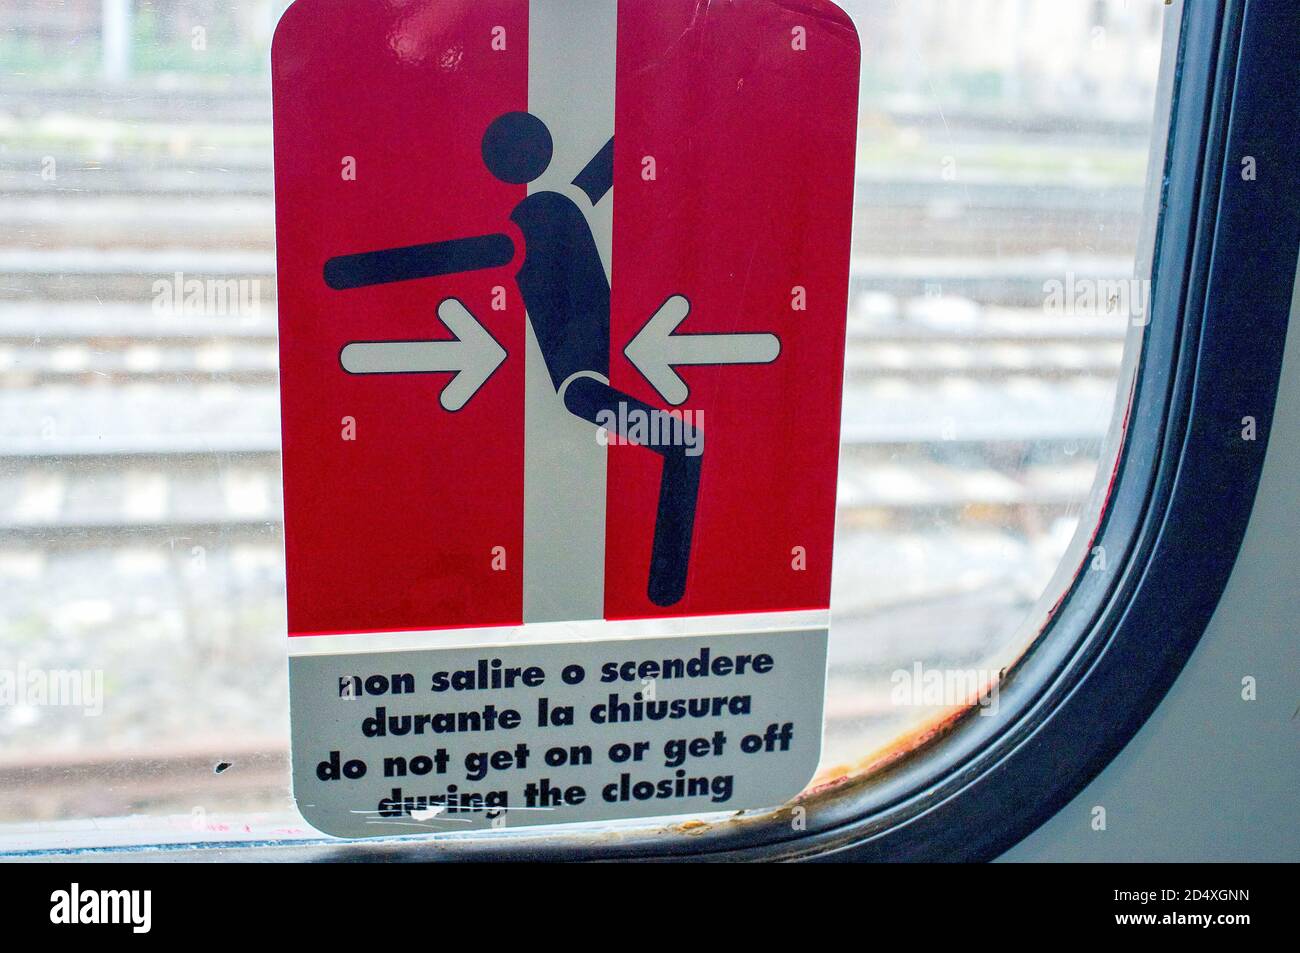 OOMF! OWWW! L'ideogramma Trenitalia utilizza graficamente un solido groin-hit per illustrare il pericolo di salire a bordo di un treno mentre le porte si chiudono. Italia Foto Stock